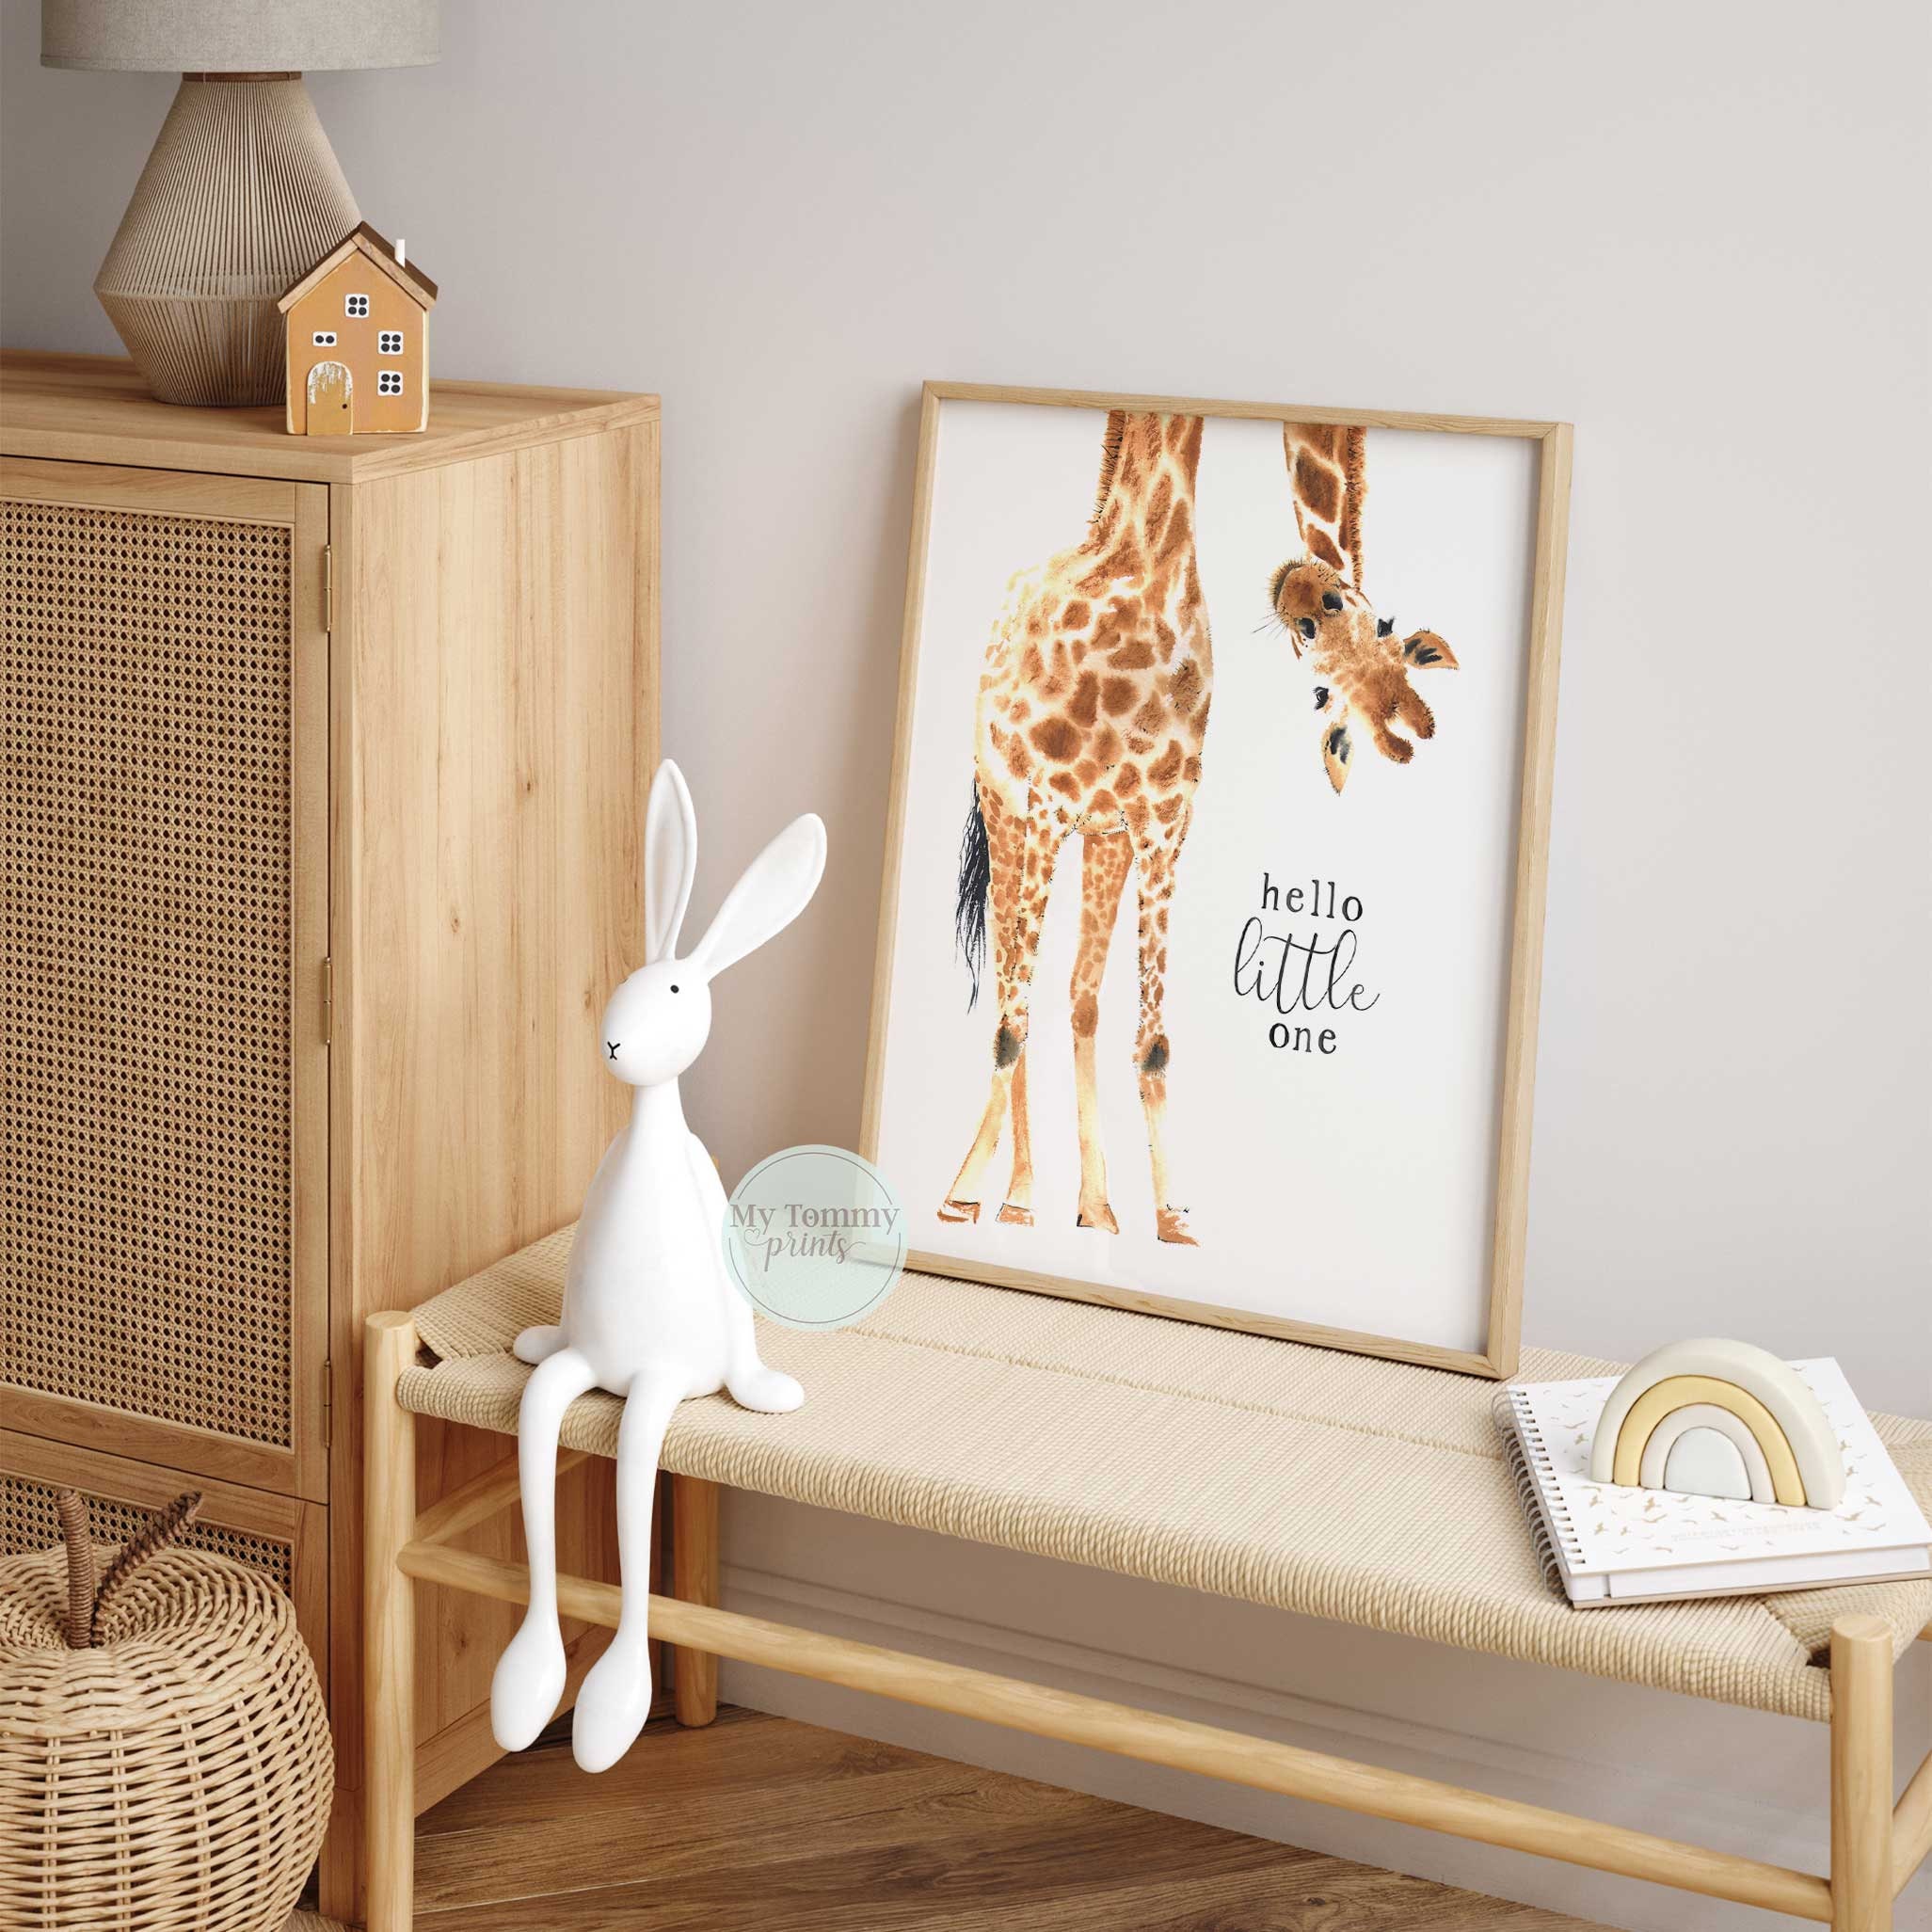 Giraffe Print Kinderzimmer Schlafzimmer Dekor Gender Neutral Decor Wall Art  Neue Baby Geschenke Hallo Little One Safari Tier Thema Tier Wandkunst